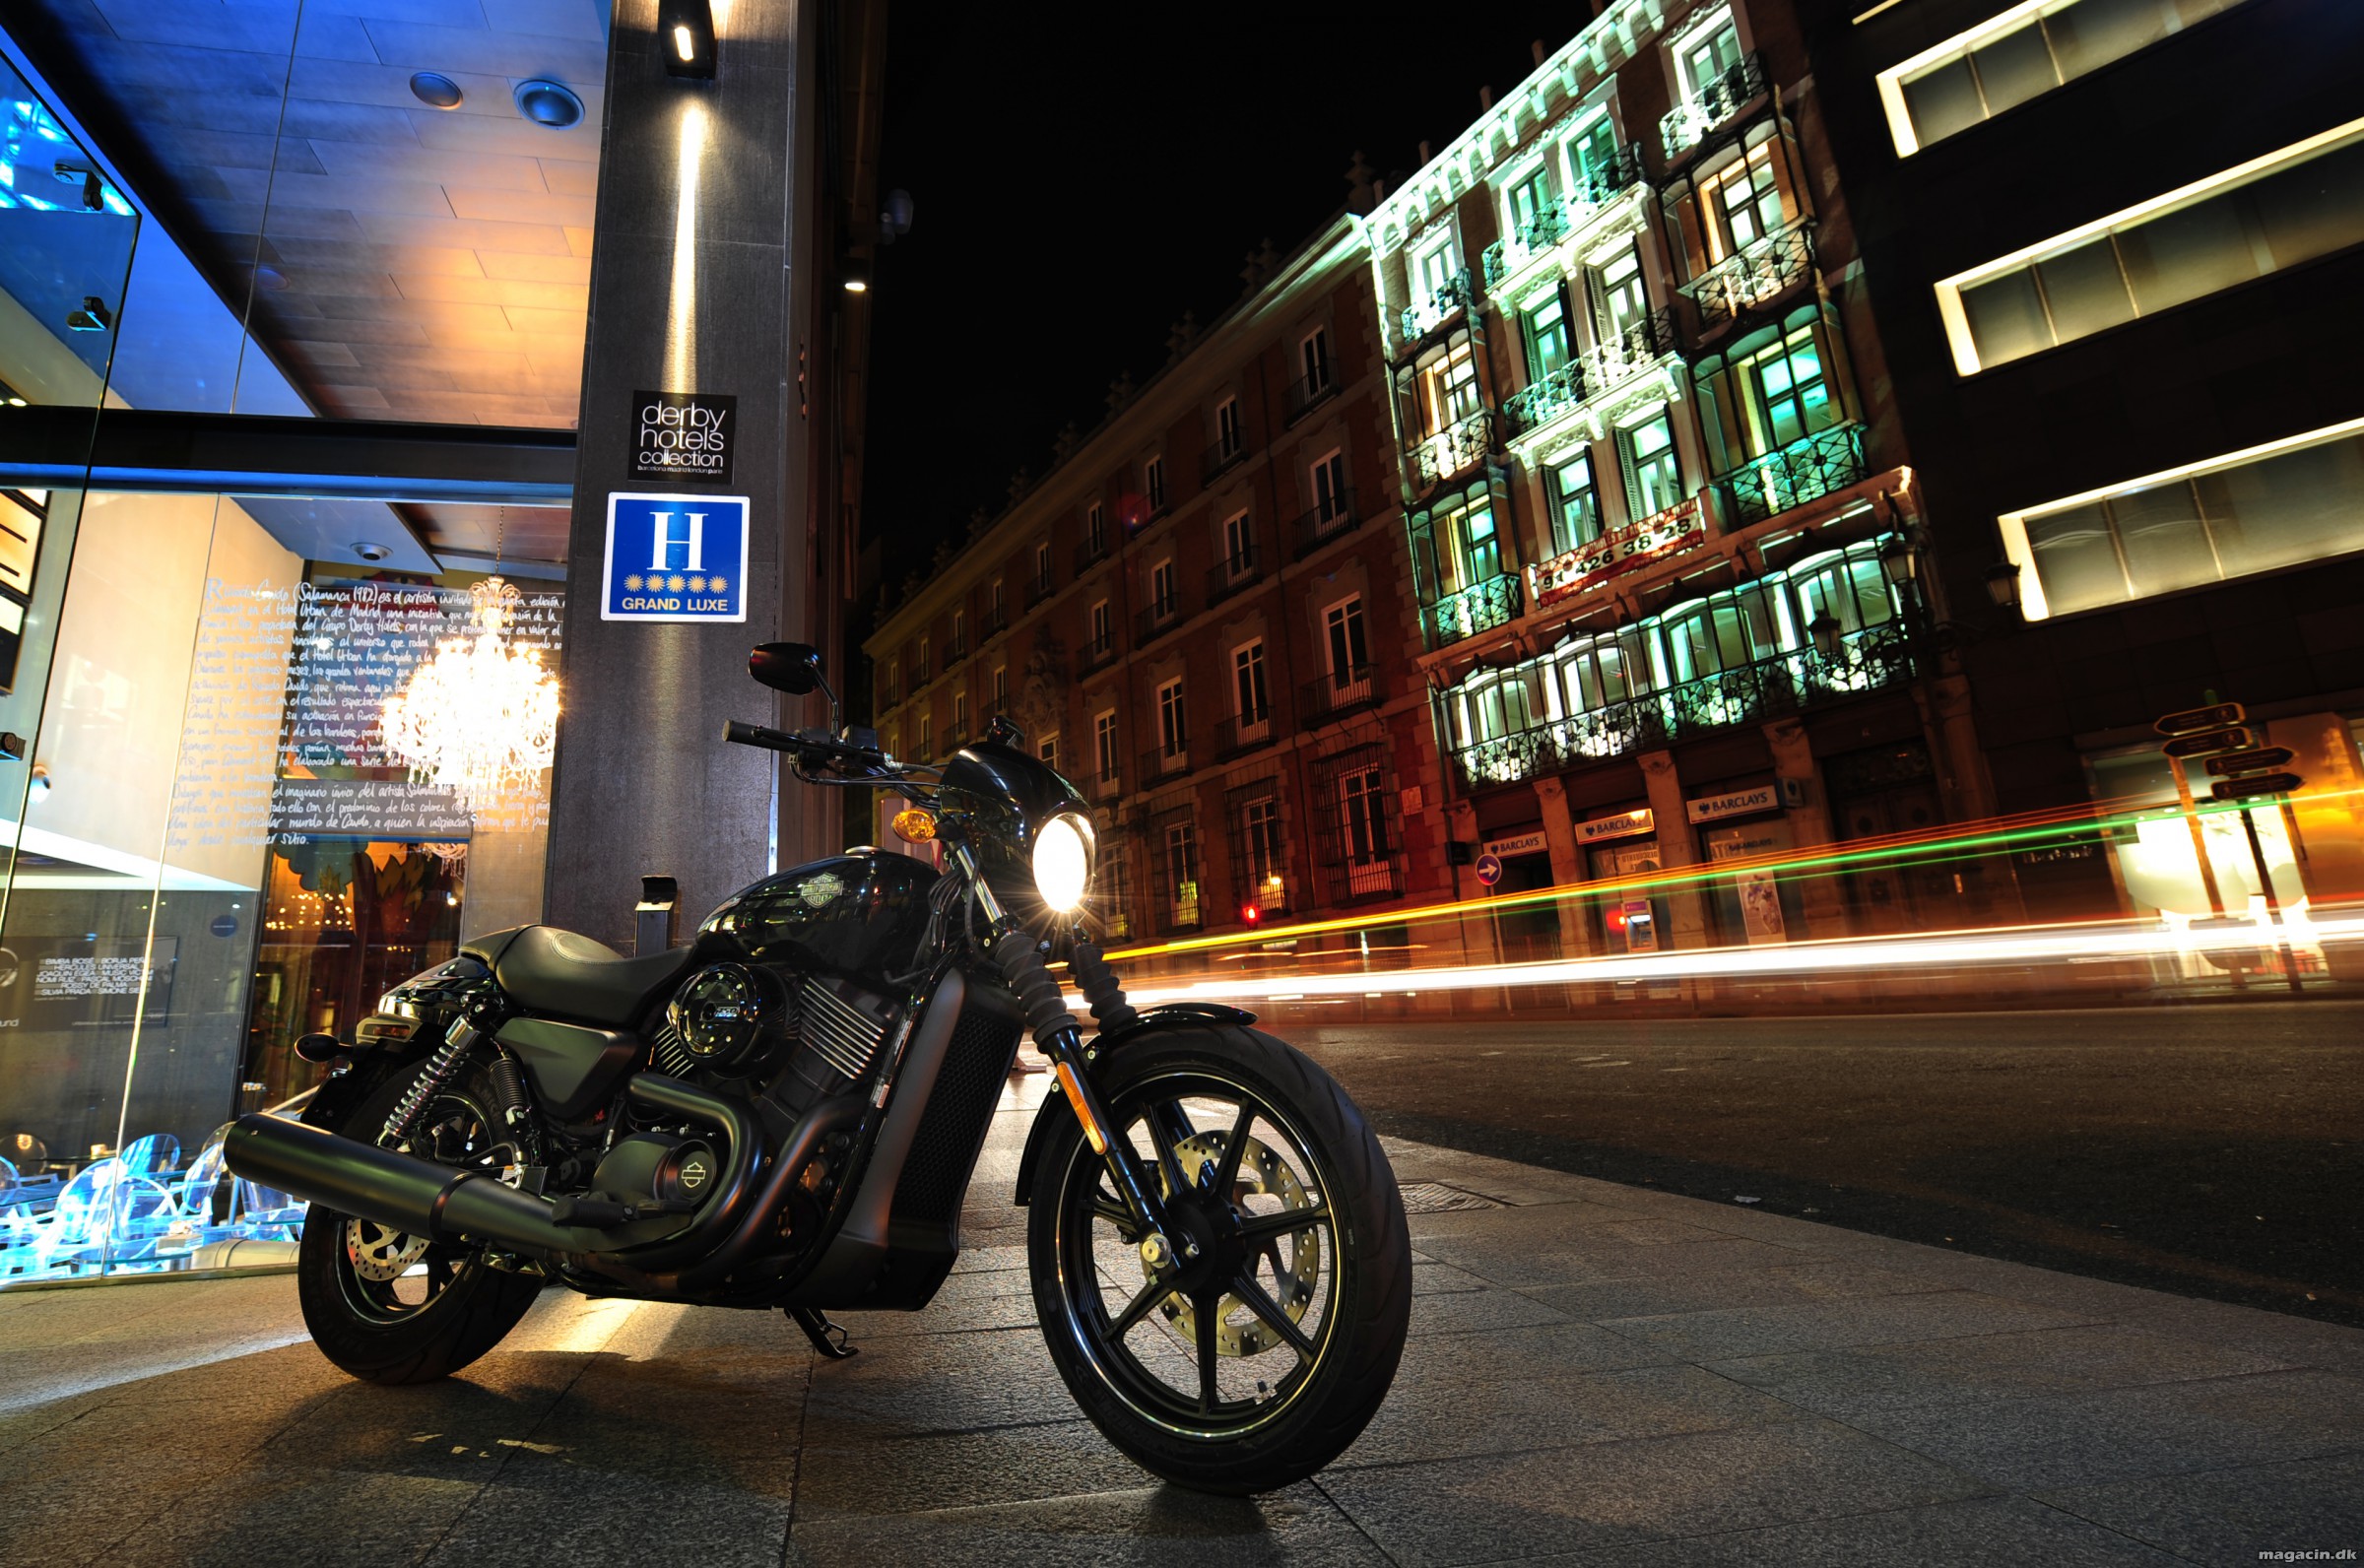 De nye Harley-Davidson 2015 modeller